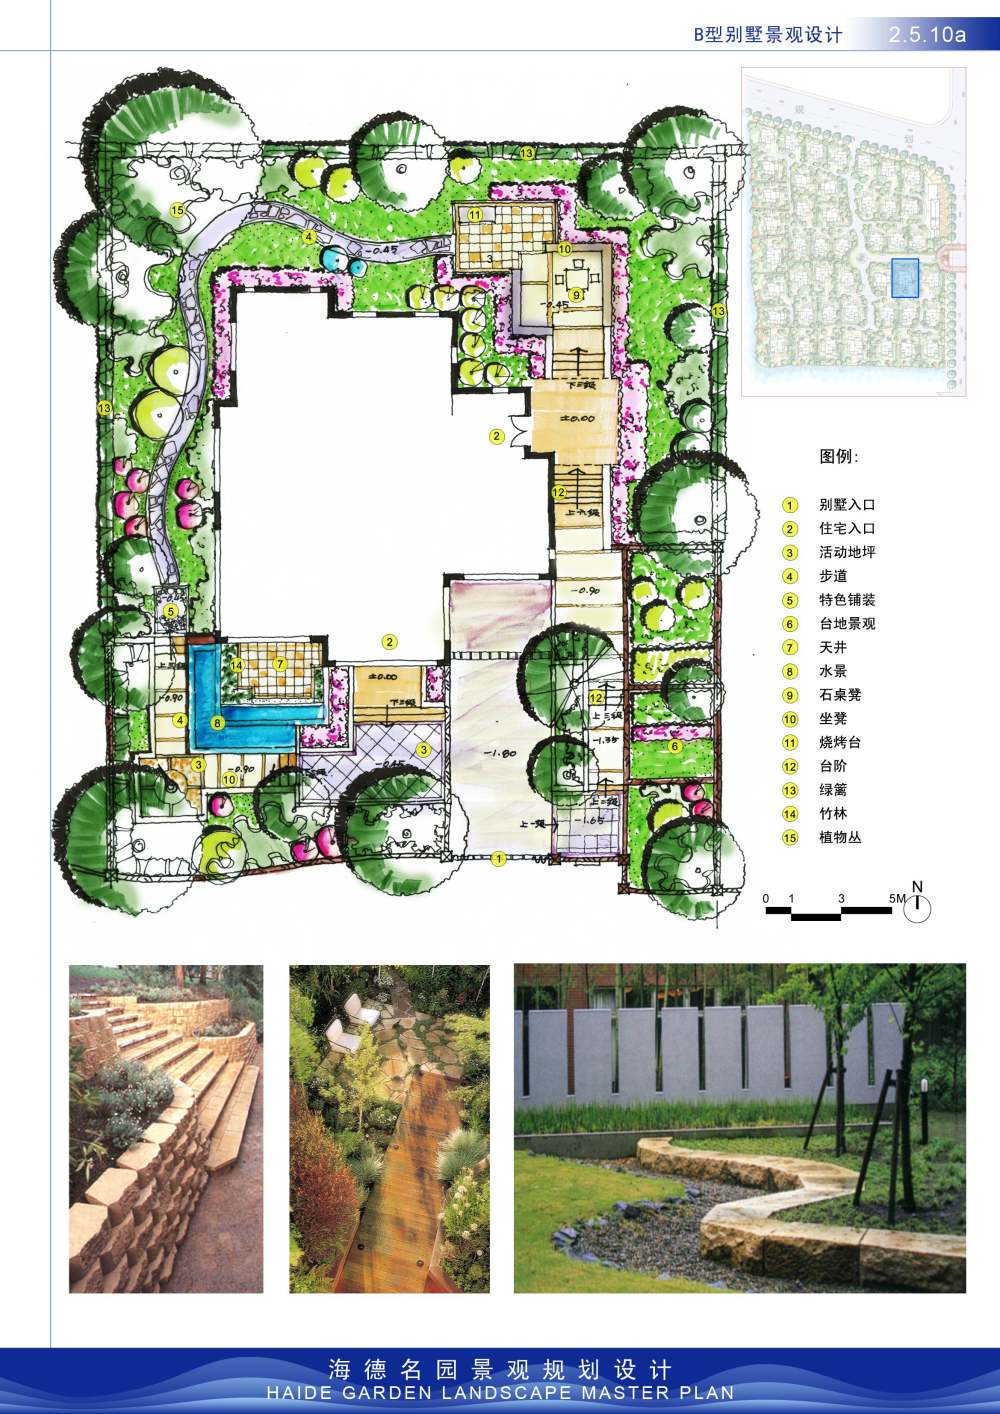 海德名园景观规划设计_2.5.10a.jpg